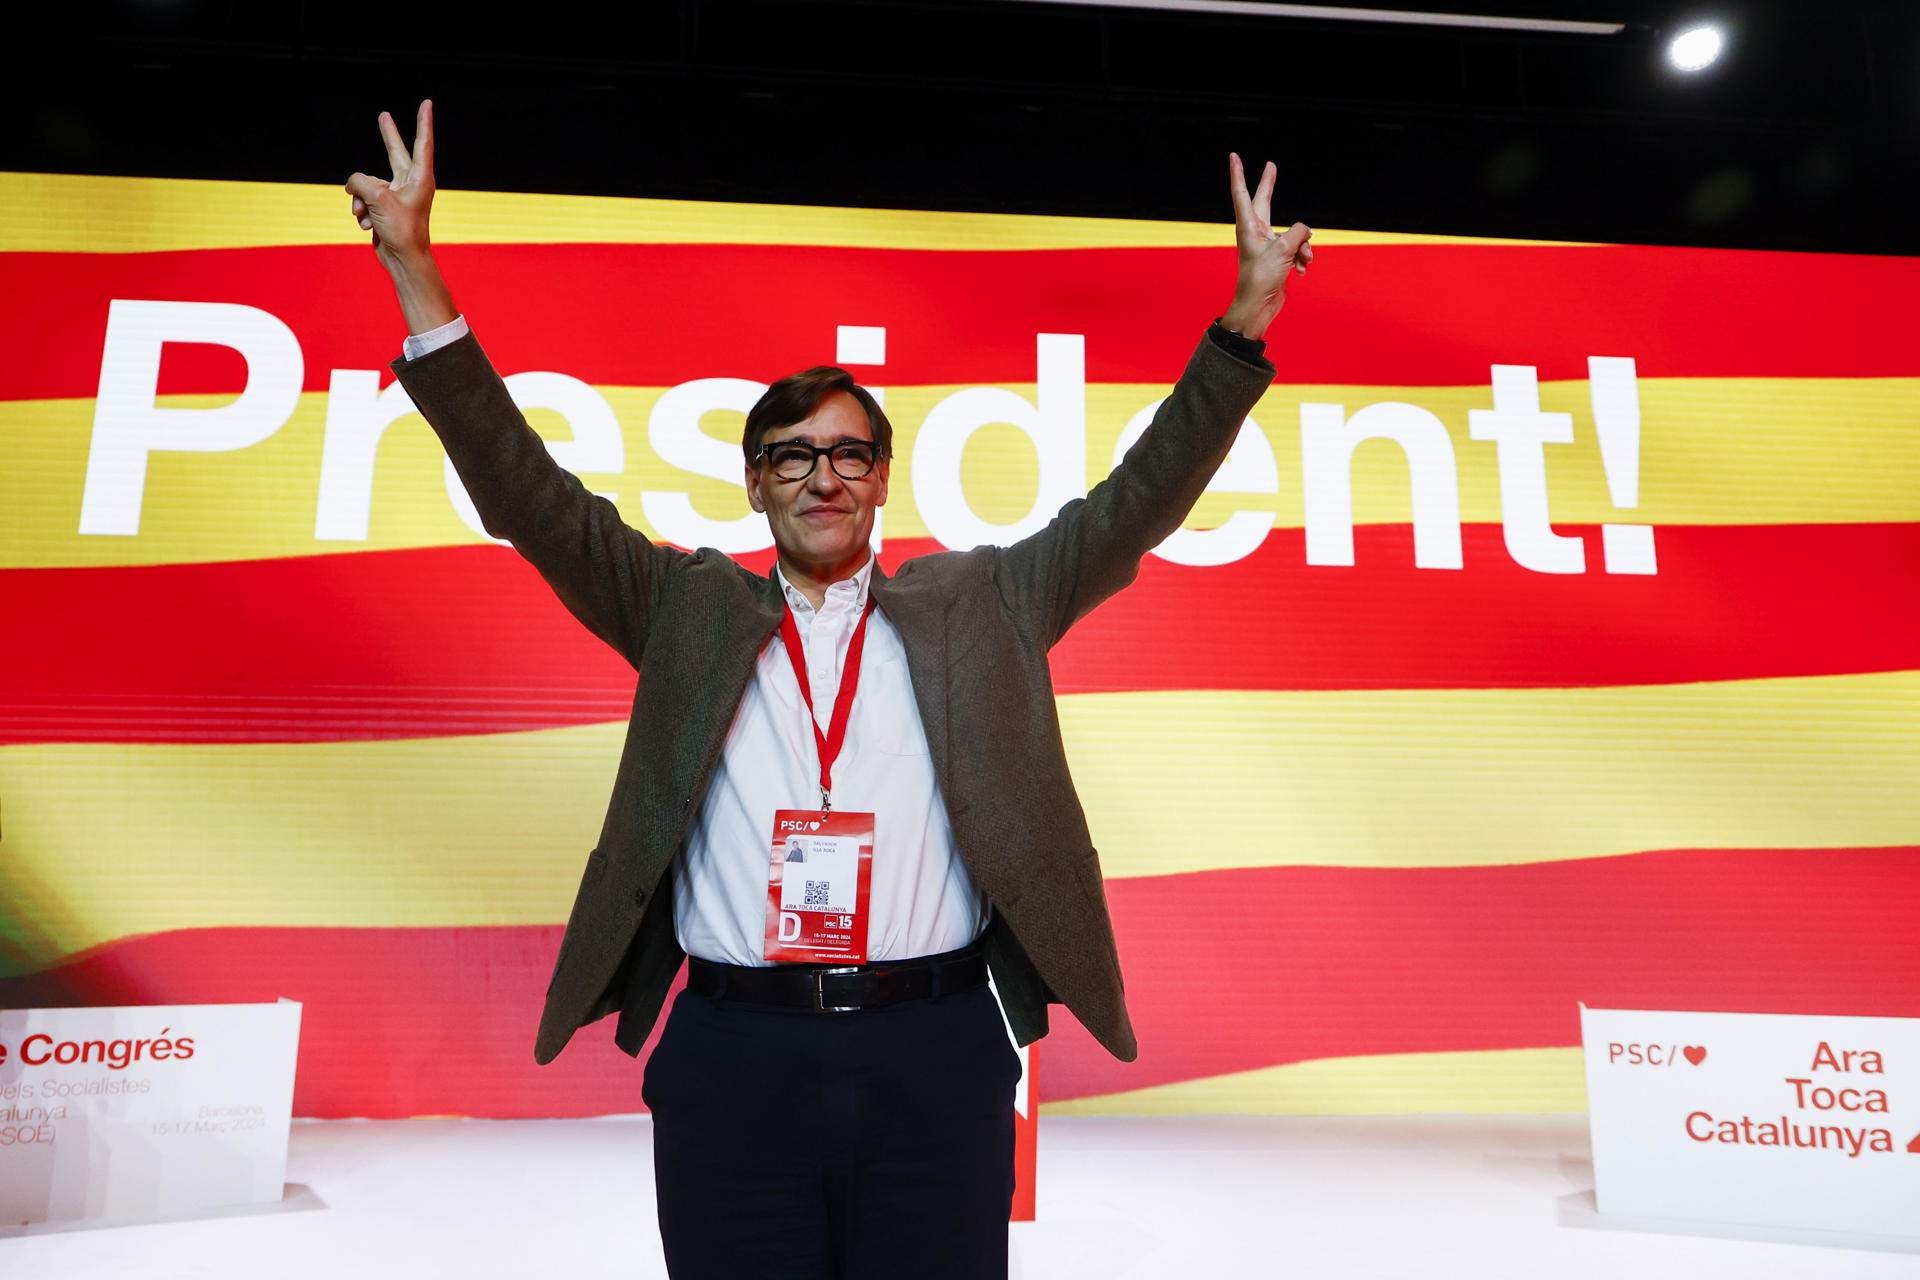 Illa, ratificat com a líder del PSC, es presenta com el candidat "de tots els catalans" per al 12-M